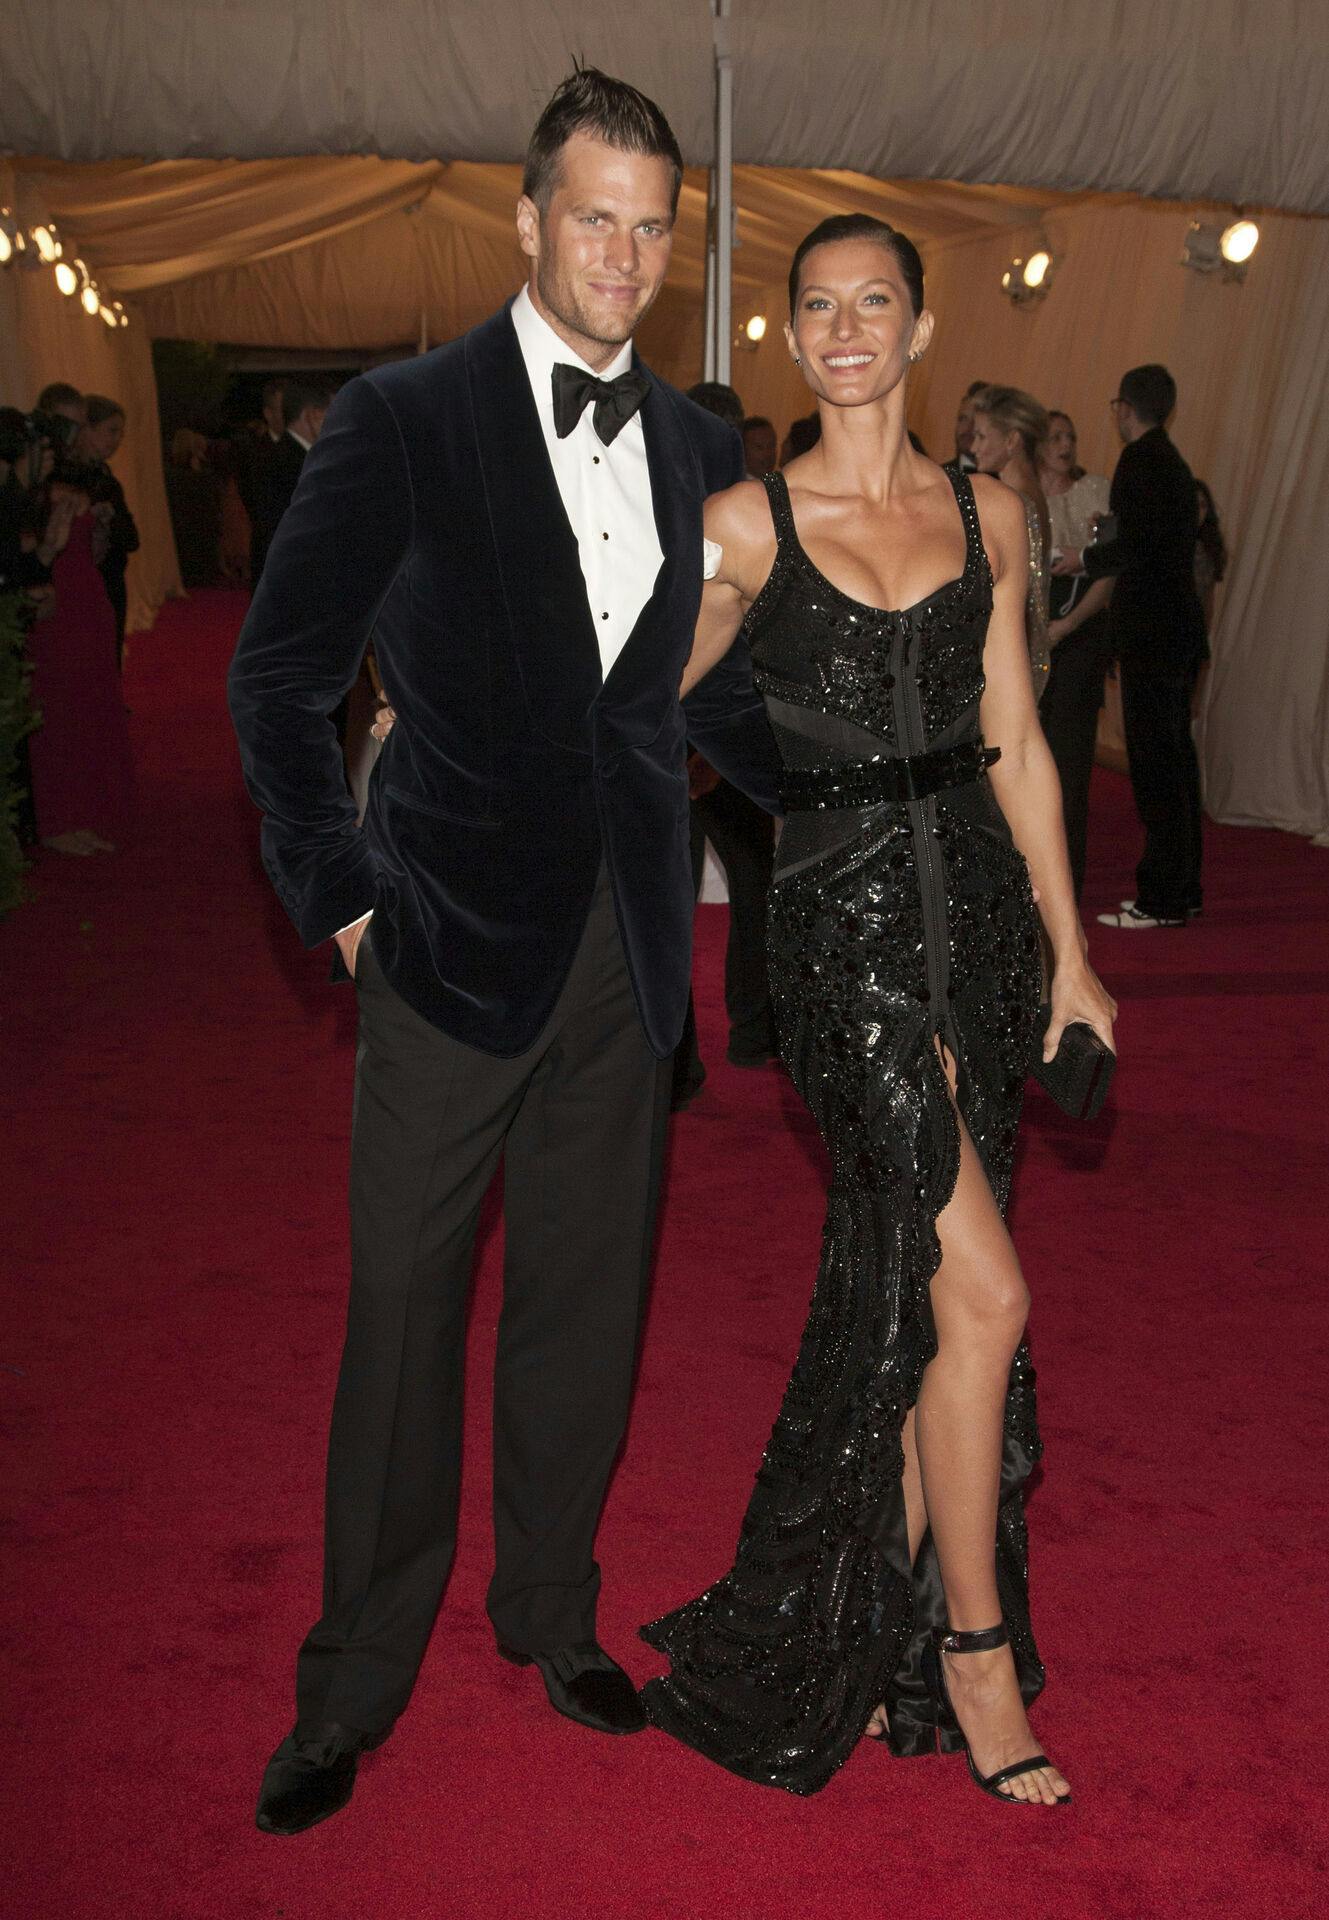 Tom Brady og Gisele Bünchen blev gift i 2009.
